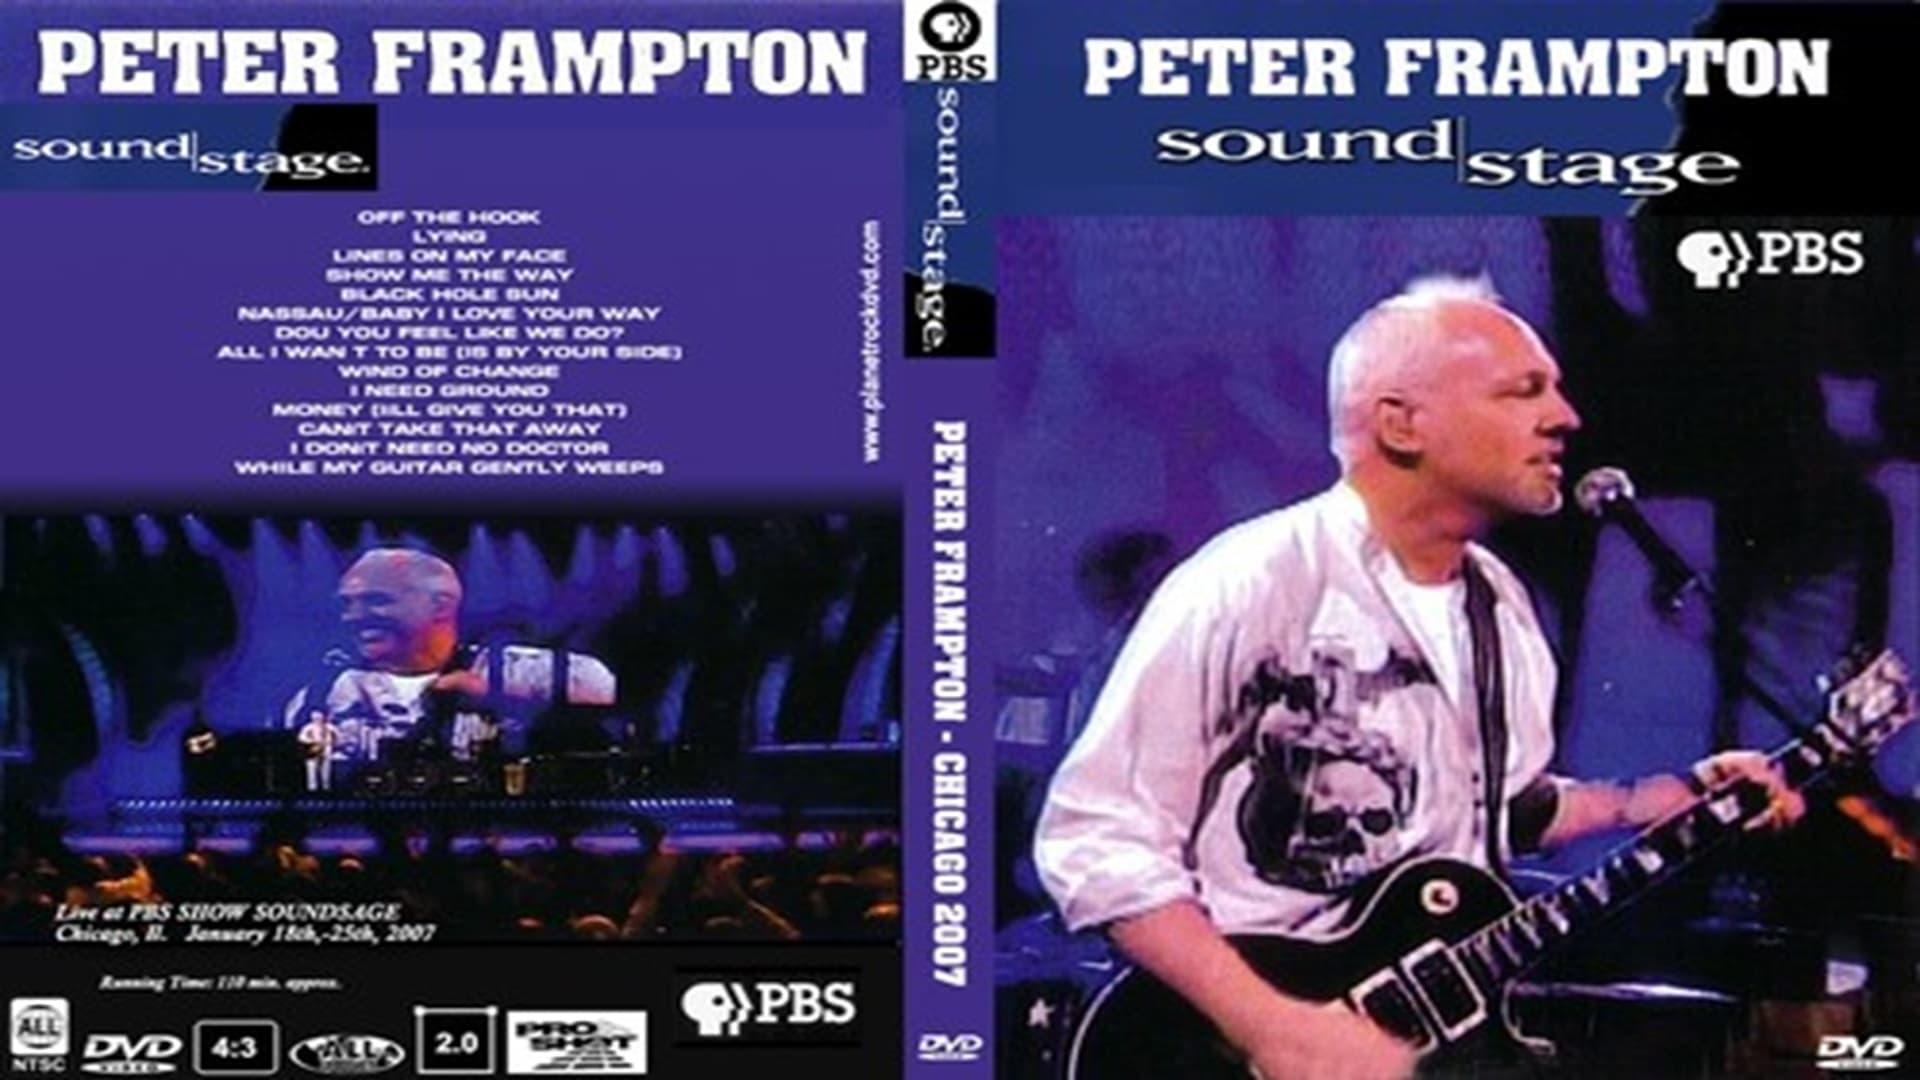 Peter Frampton: Live at Soundstage backdrop